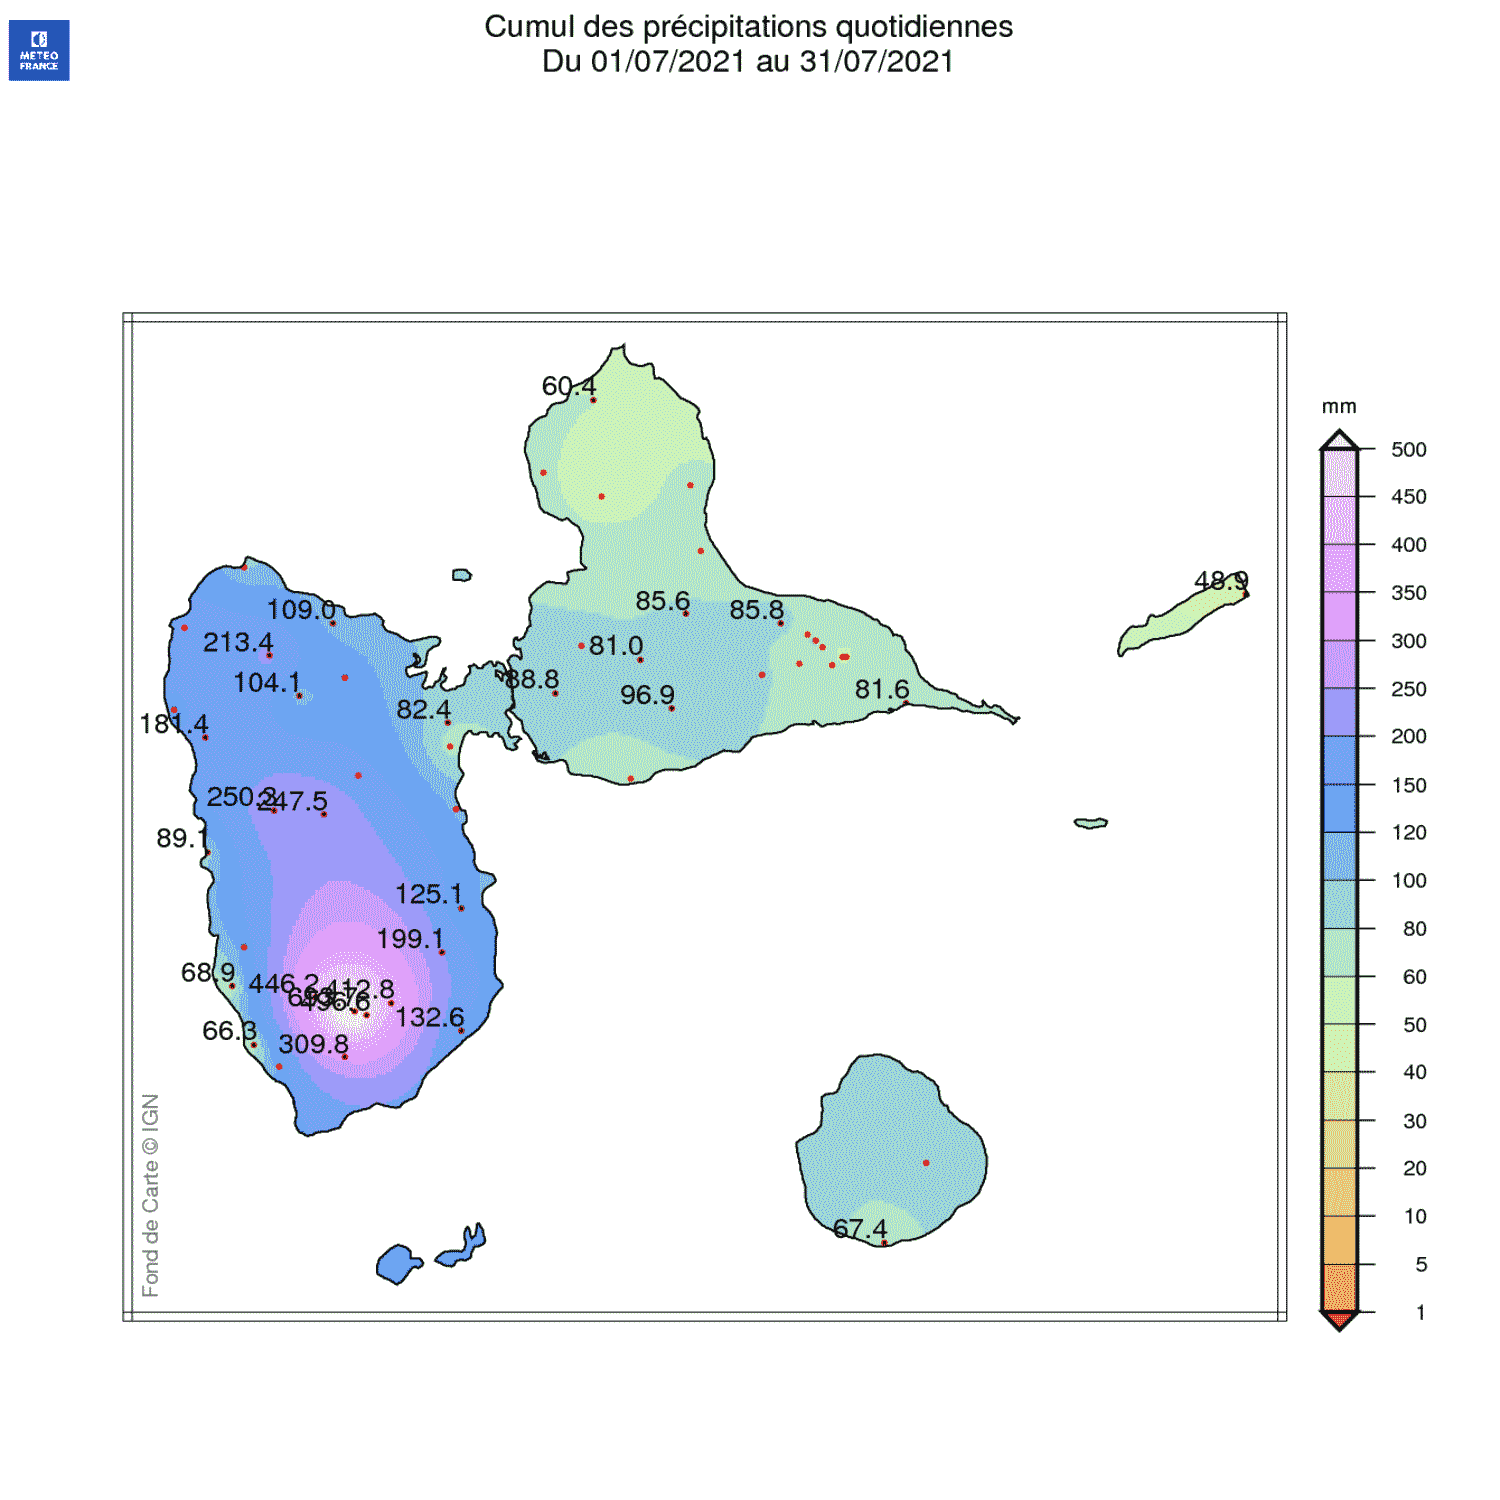 Carte de la pluviométrie sur l'archipel guadeloupéen en juillet 2021